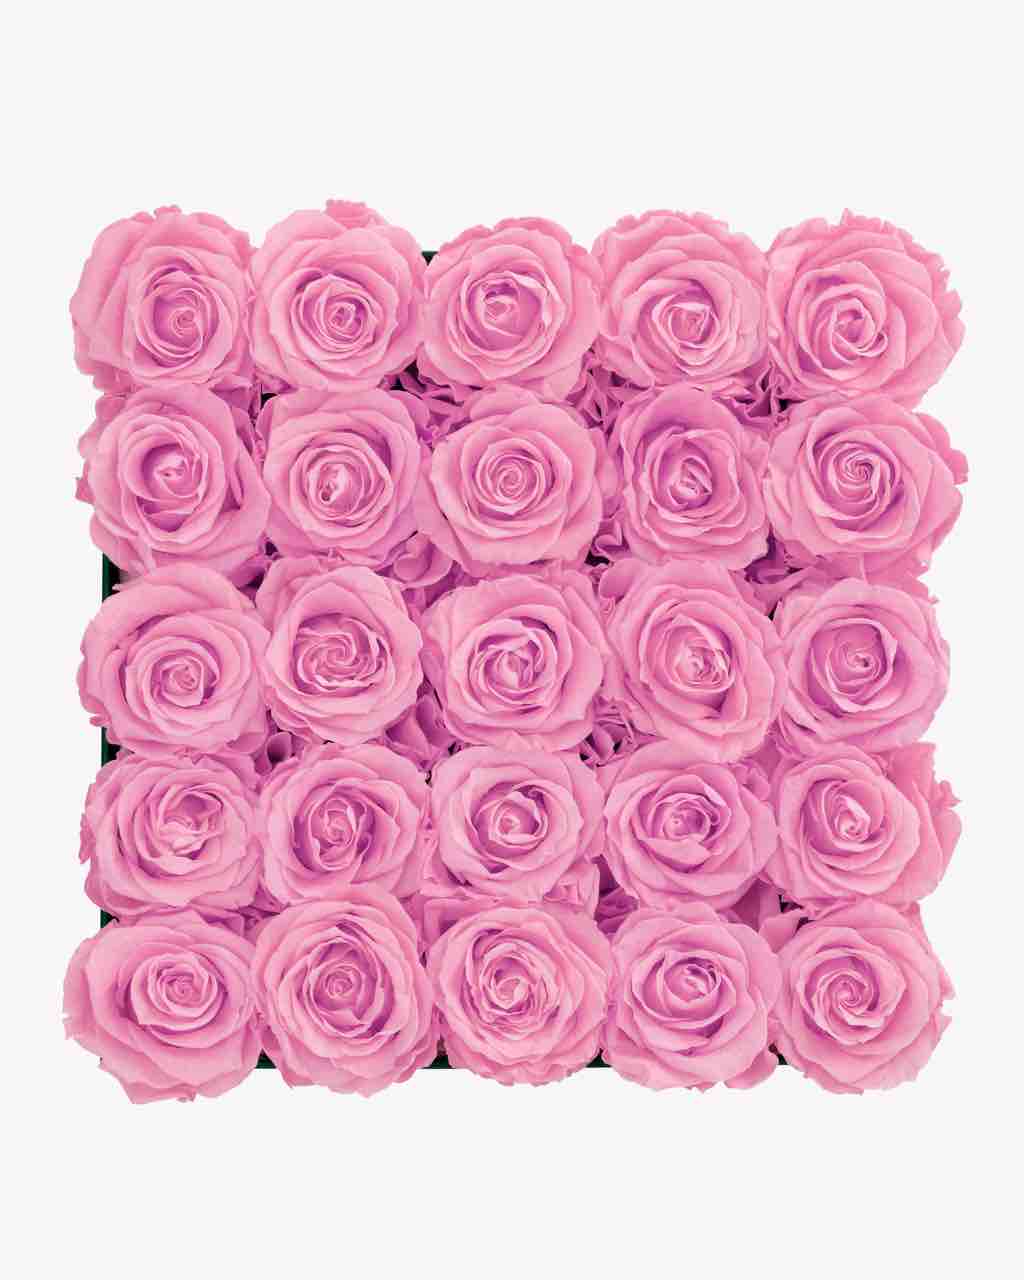 Rose Box - Large Luxury Box